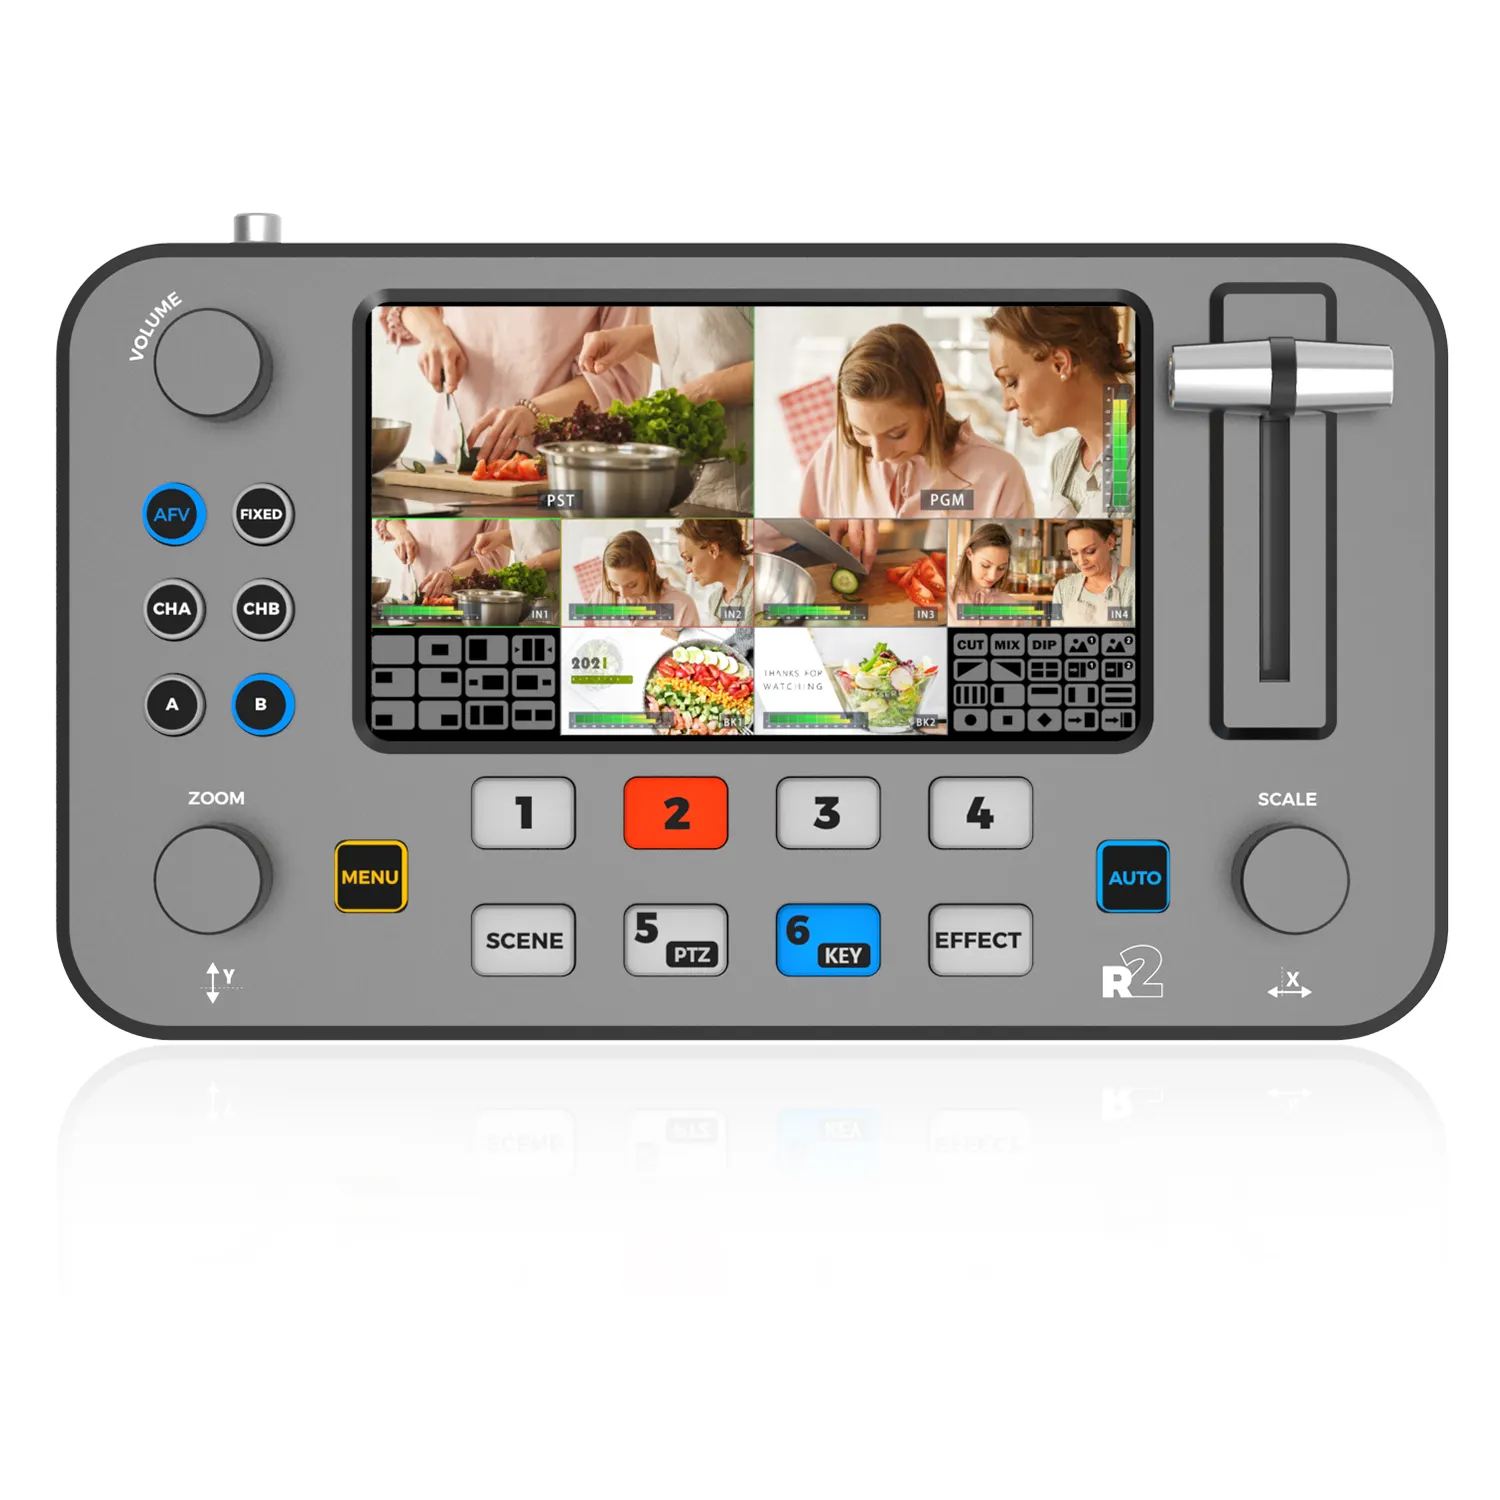 Switcher Mixer Video HD 4k